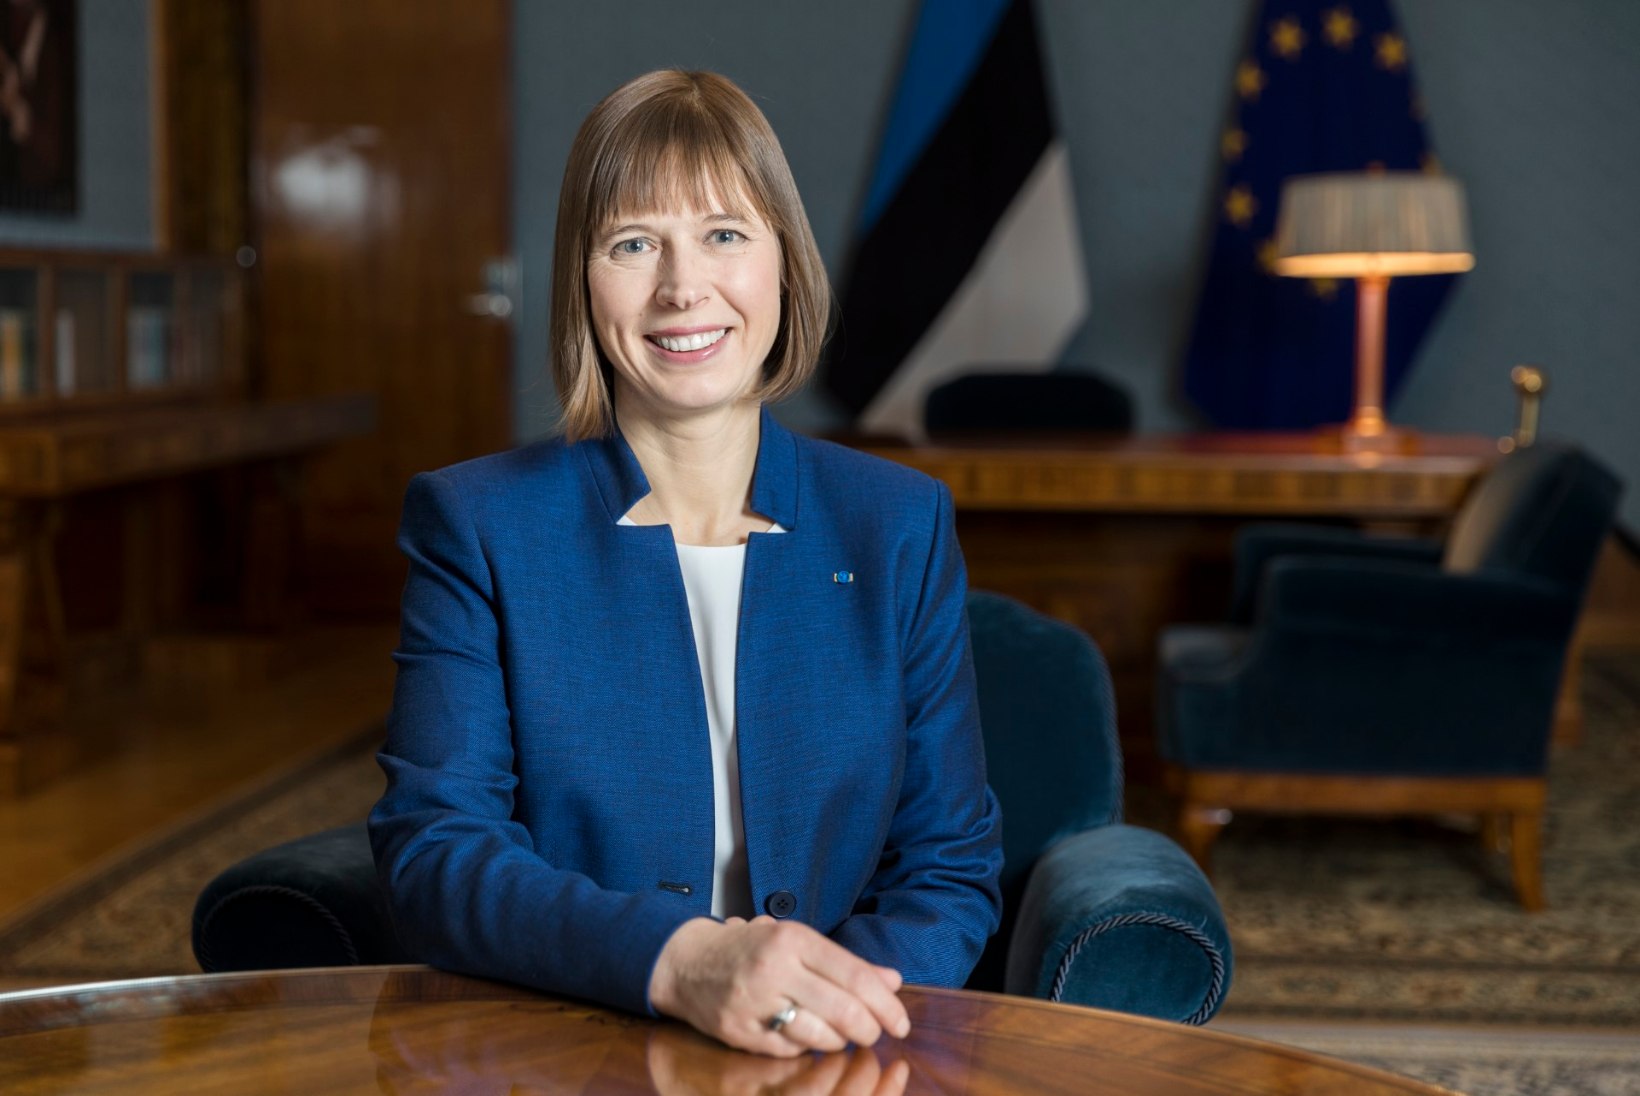 Presidendi uusaastatervitust jälgis ligi pool miljonit eestimaalast